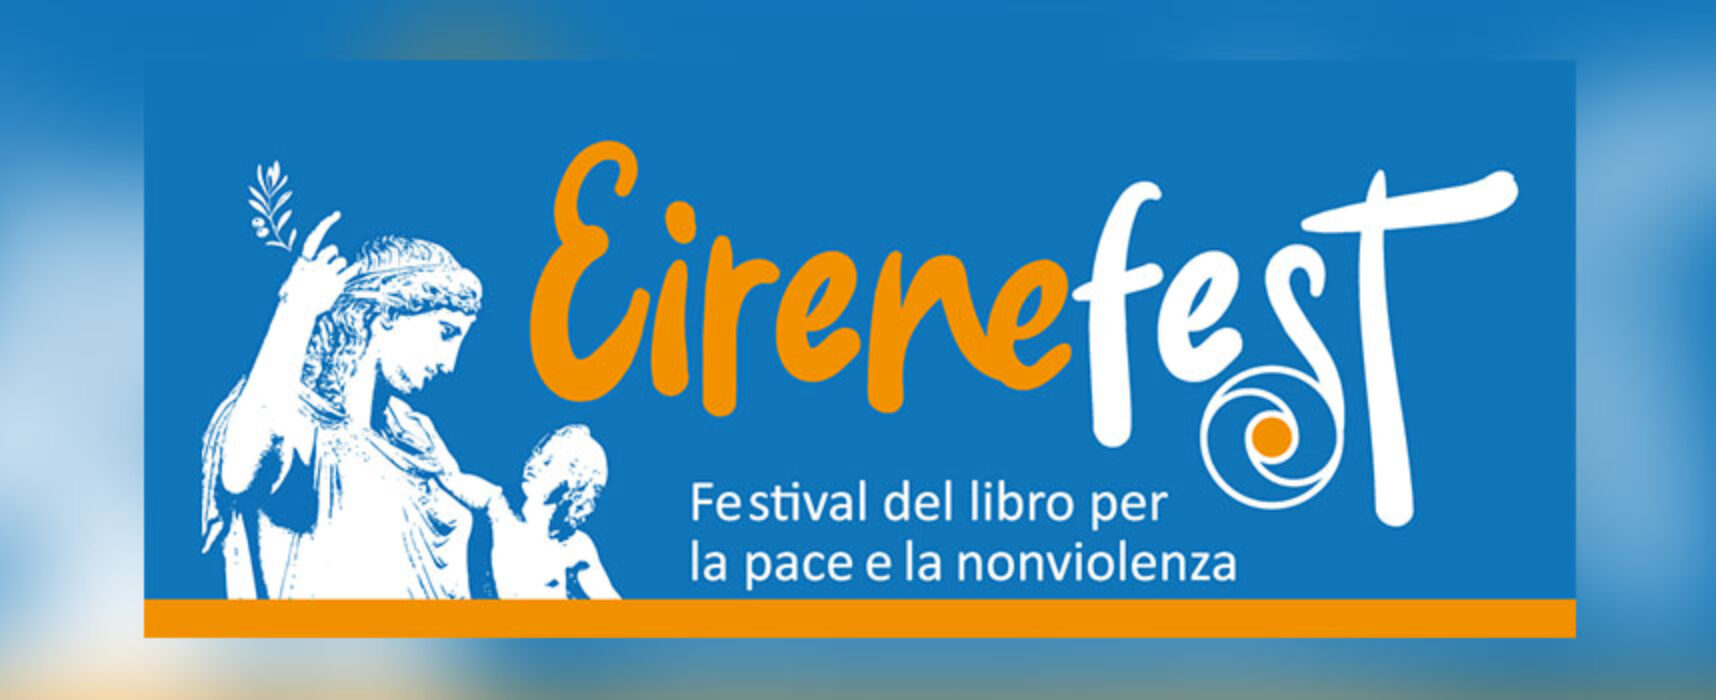 Il Castello di Bisceglie ospiterà l’Eirenefest, Festival del libro per la pace